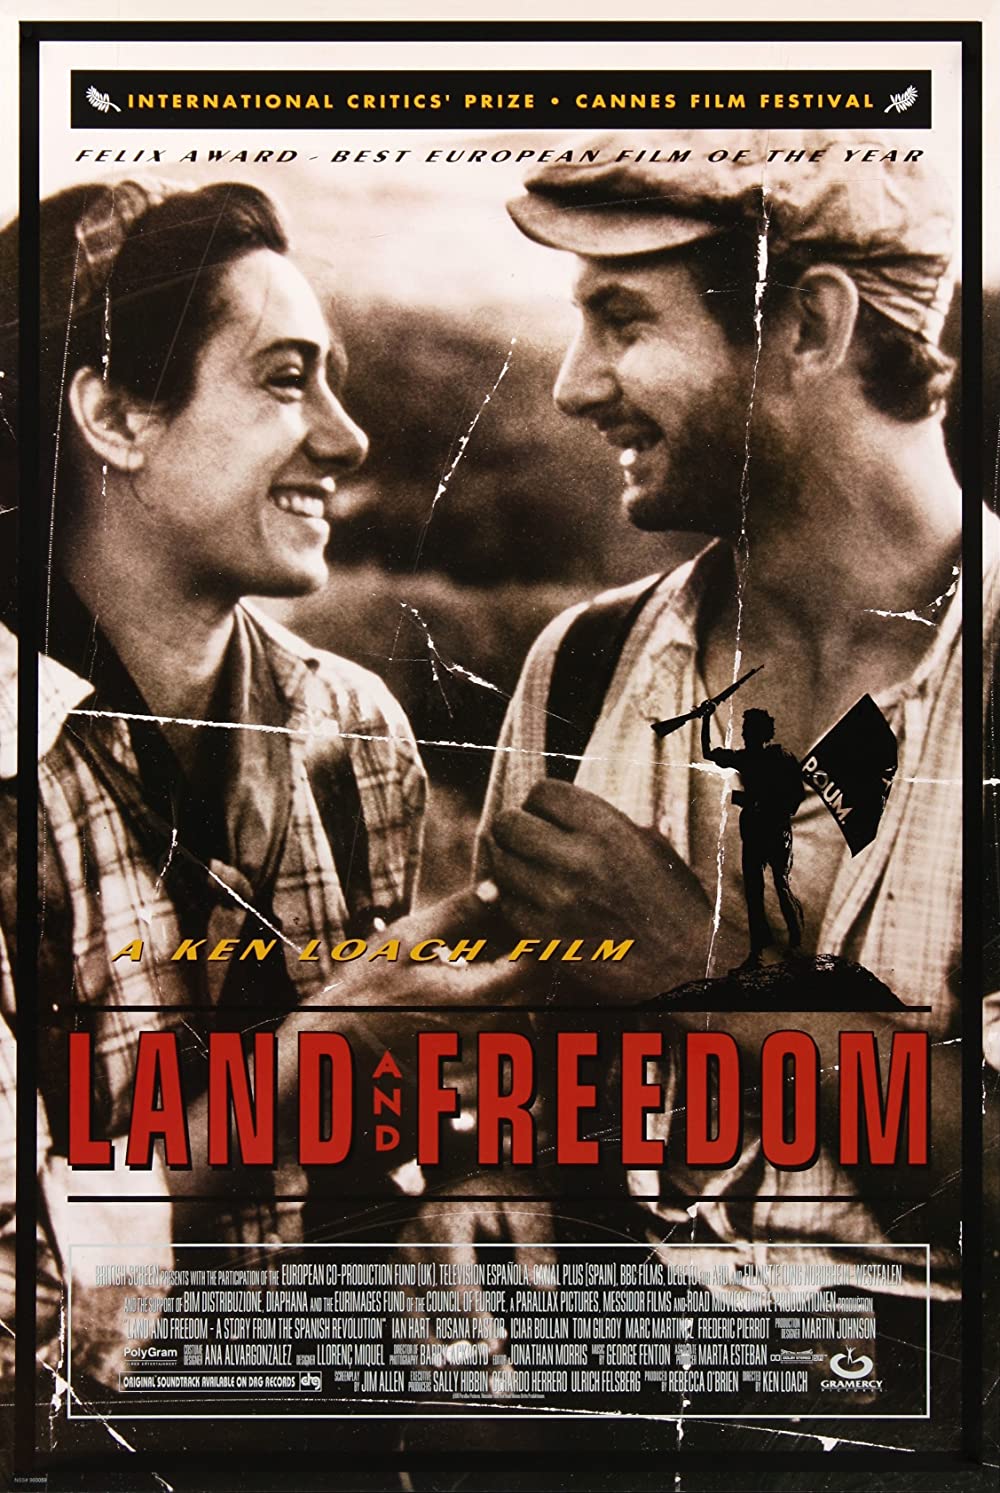 Filmbeschreibung zu Land and Freedom